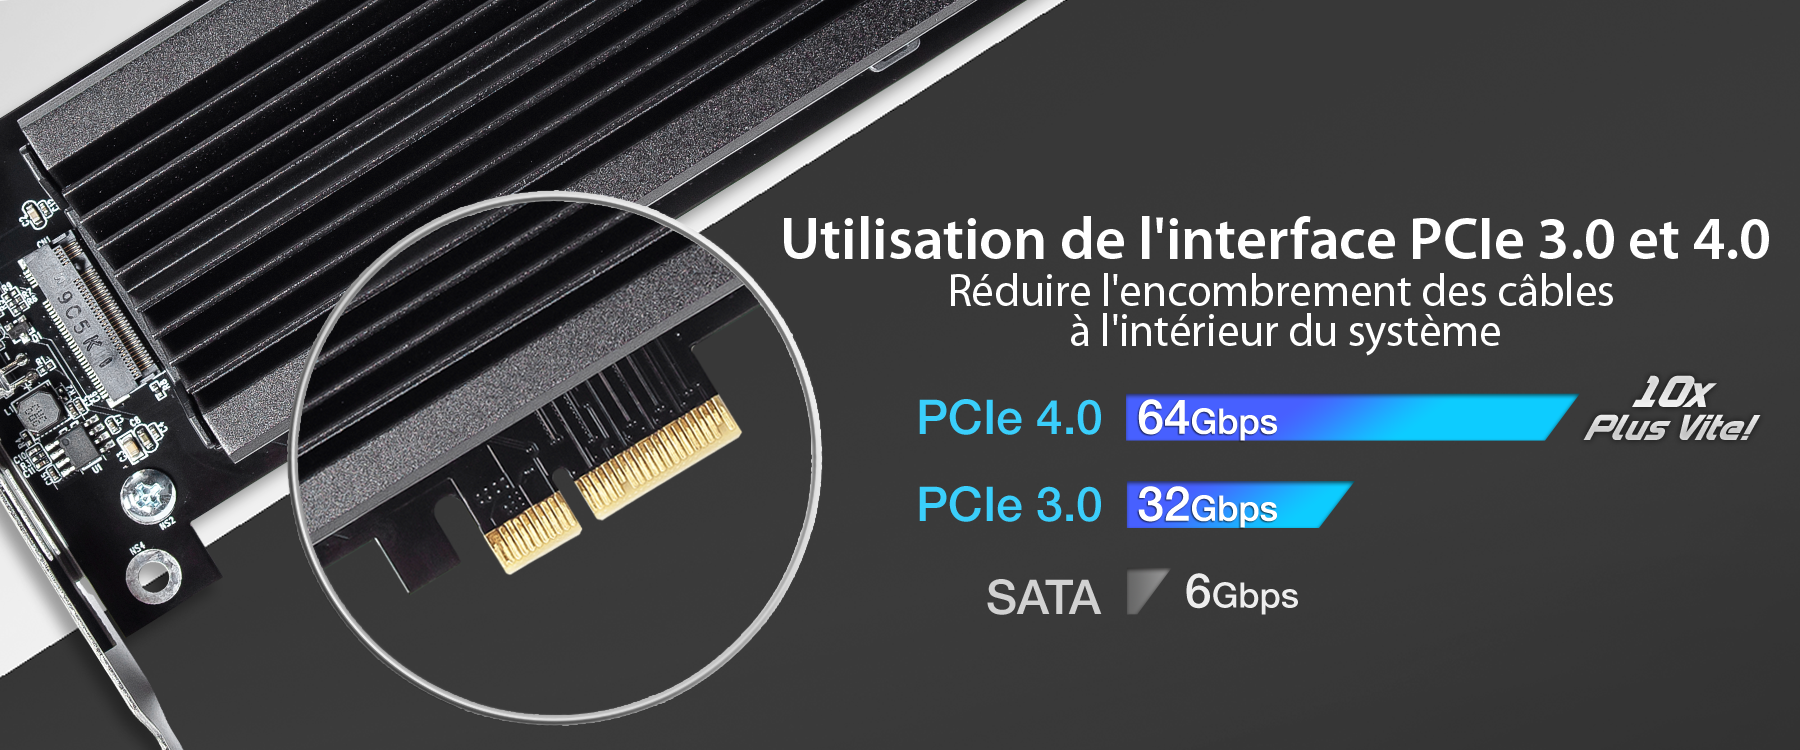 Photo de l'interface PCIe 4.0 qui permet de réduire l'encombrement des cables